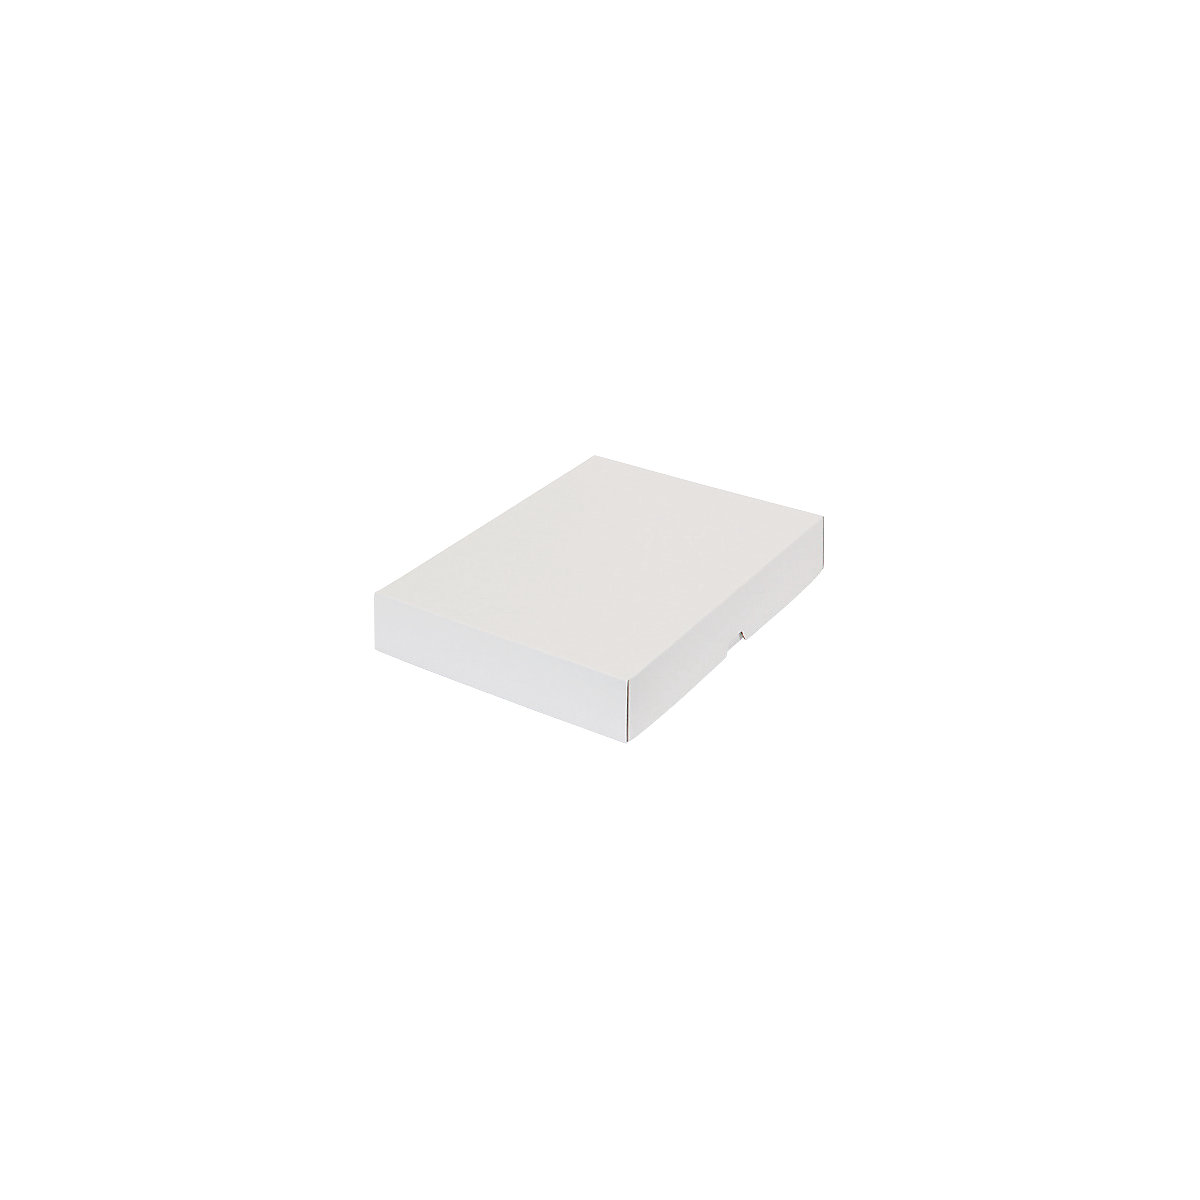 Stülpdeckelkarton, zweiteilig, Innenmaße 301 x 213 x 45 mm, A4, weiß, ab 300 Stk-20